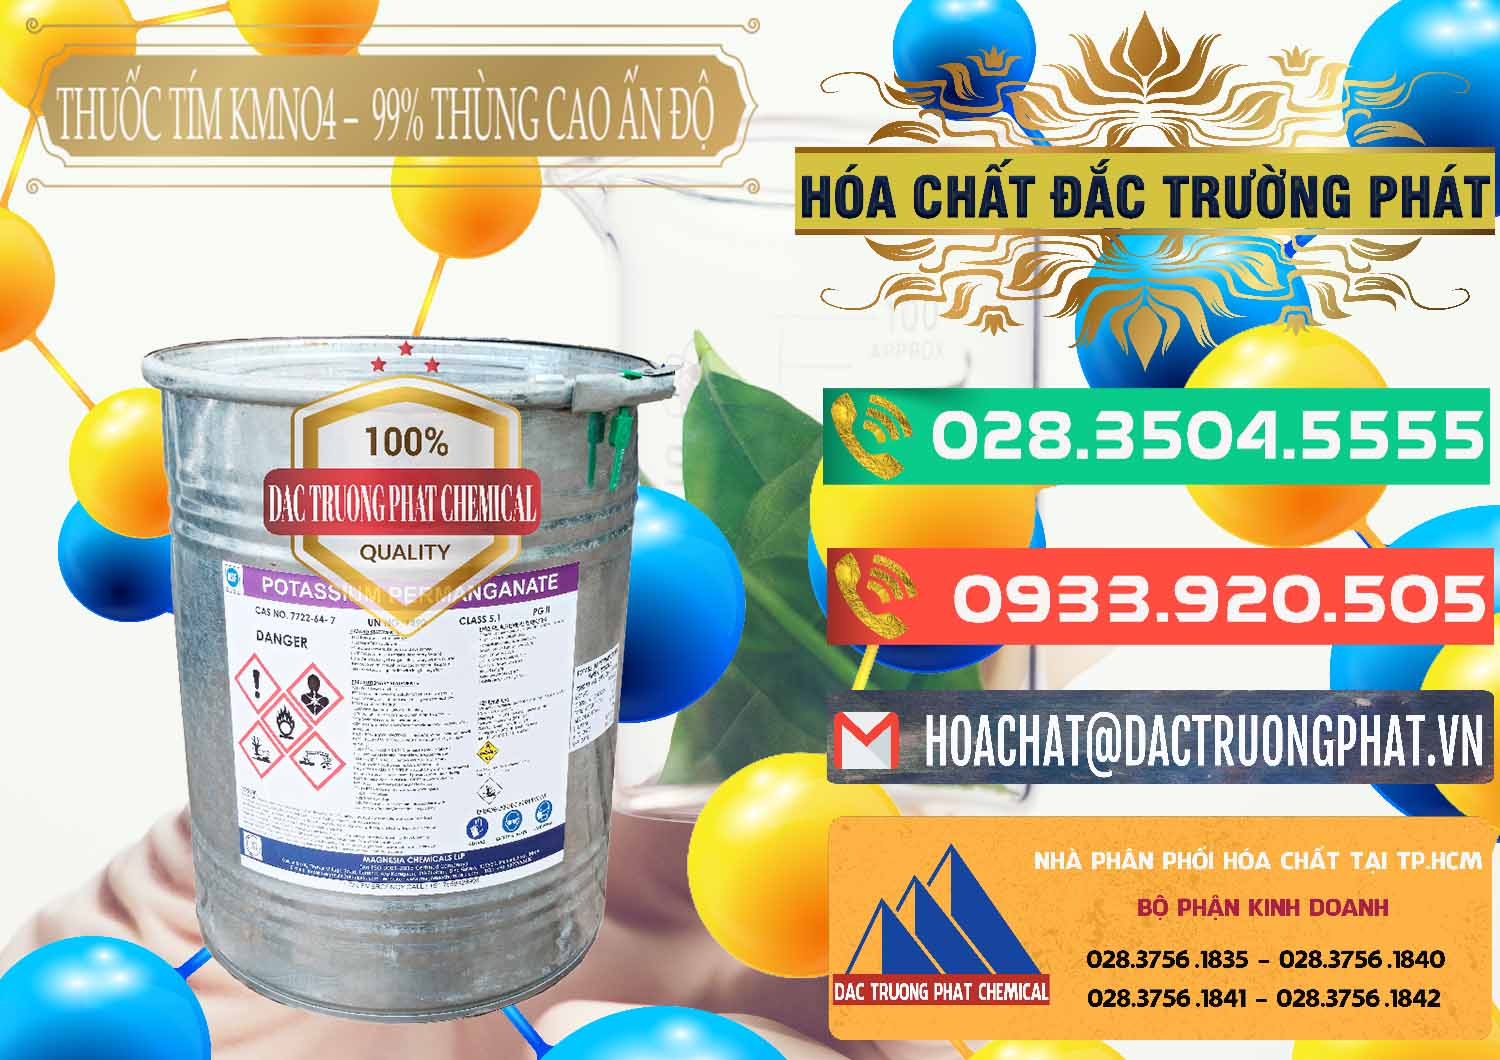 Công ty bán _ cung cấp Thuốc Tím - KMNO4 Thùng Cao 99% Magnesia Chemicals Ấn Độ India - 0164 - Chuyên nhập khẩu và phân phối hóa chất tại TP.HCM - congtyhoachat.com.vn